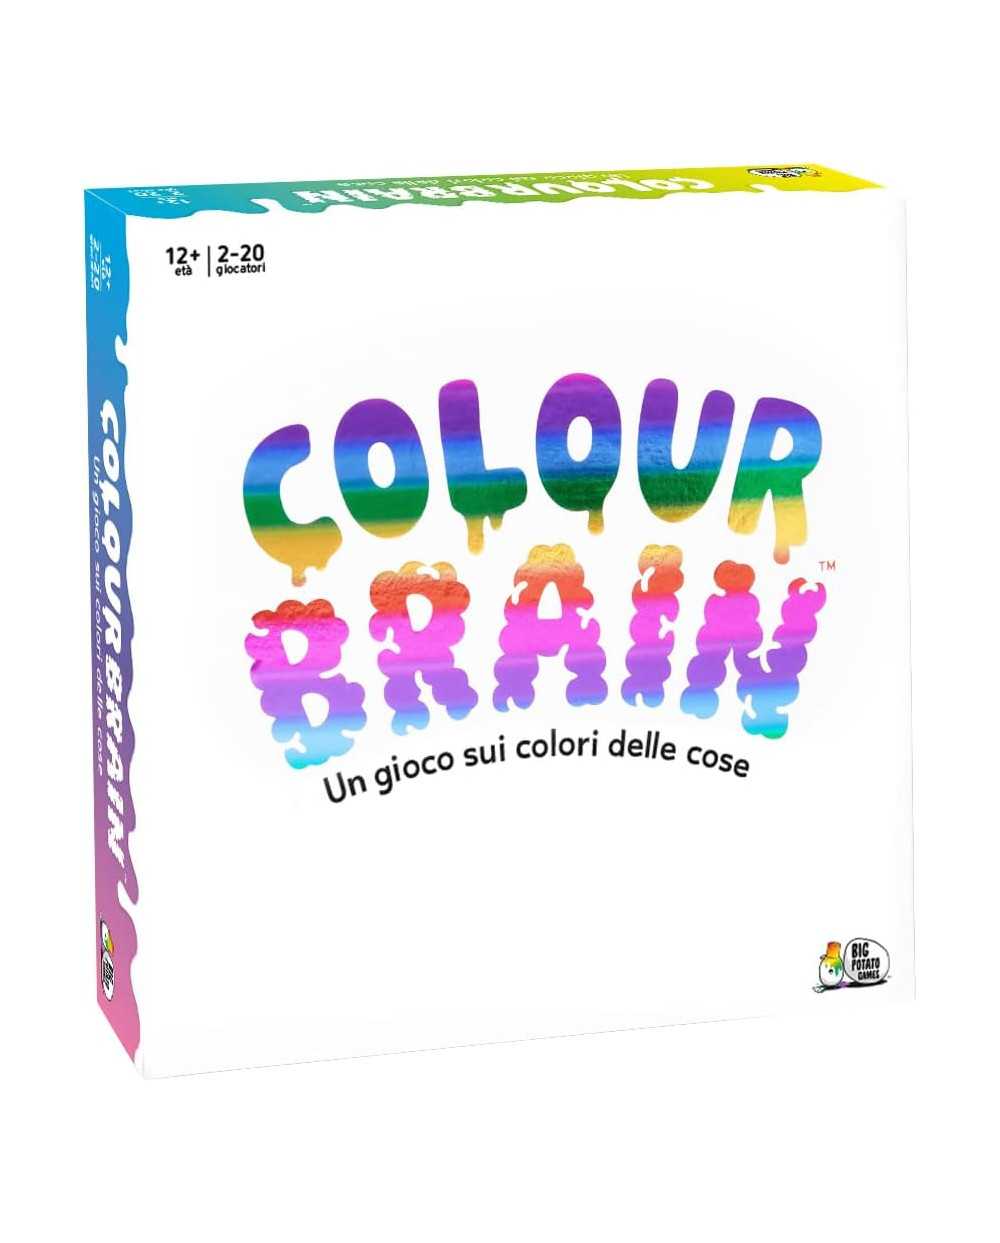 Colour Brain Asmodee